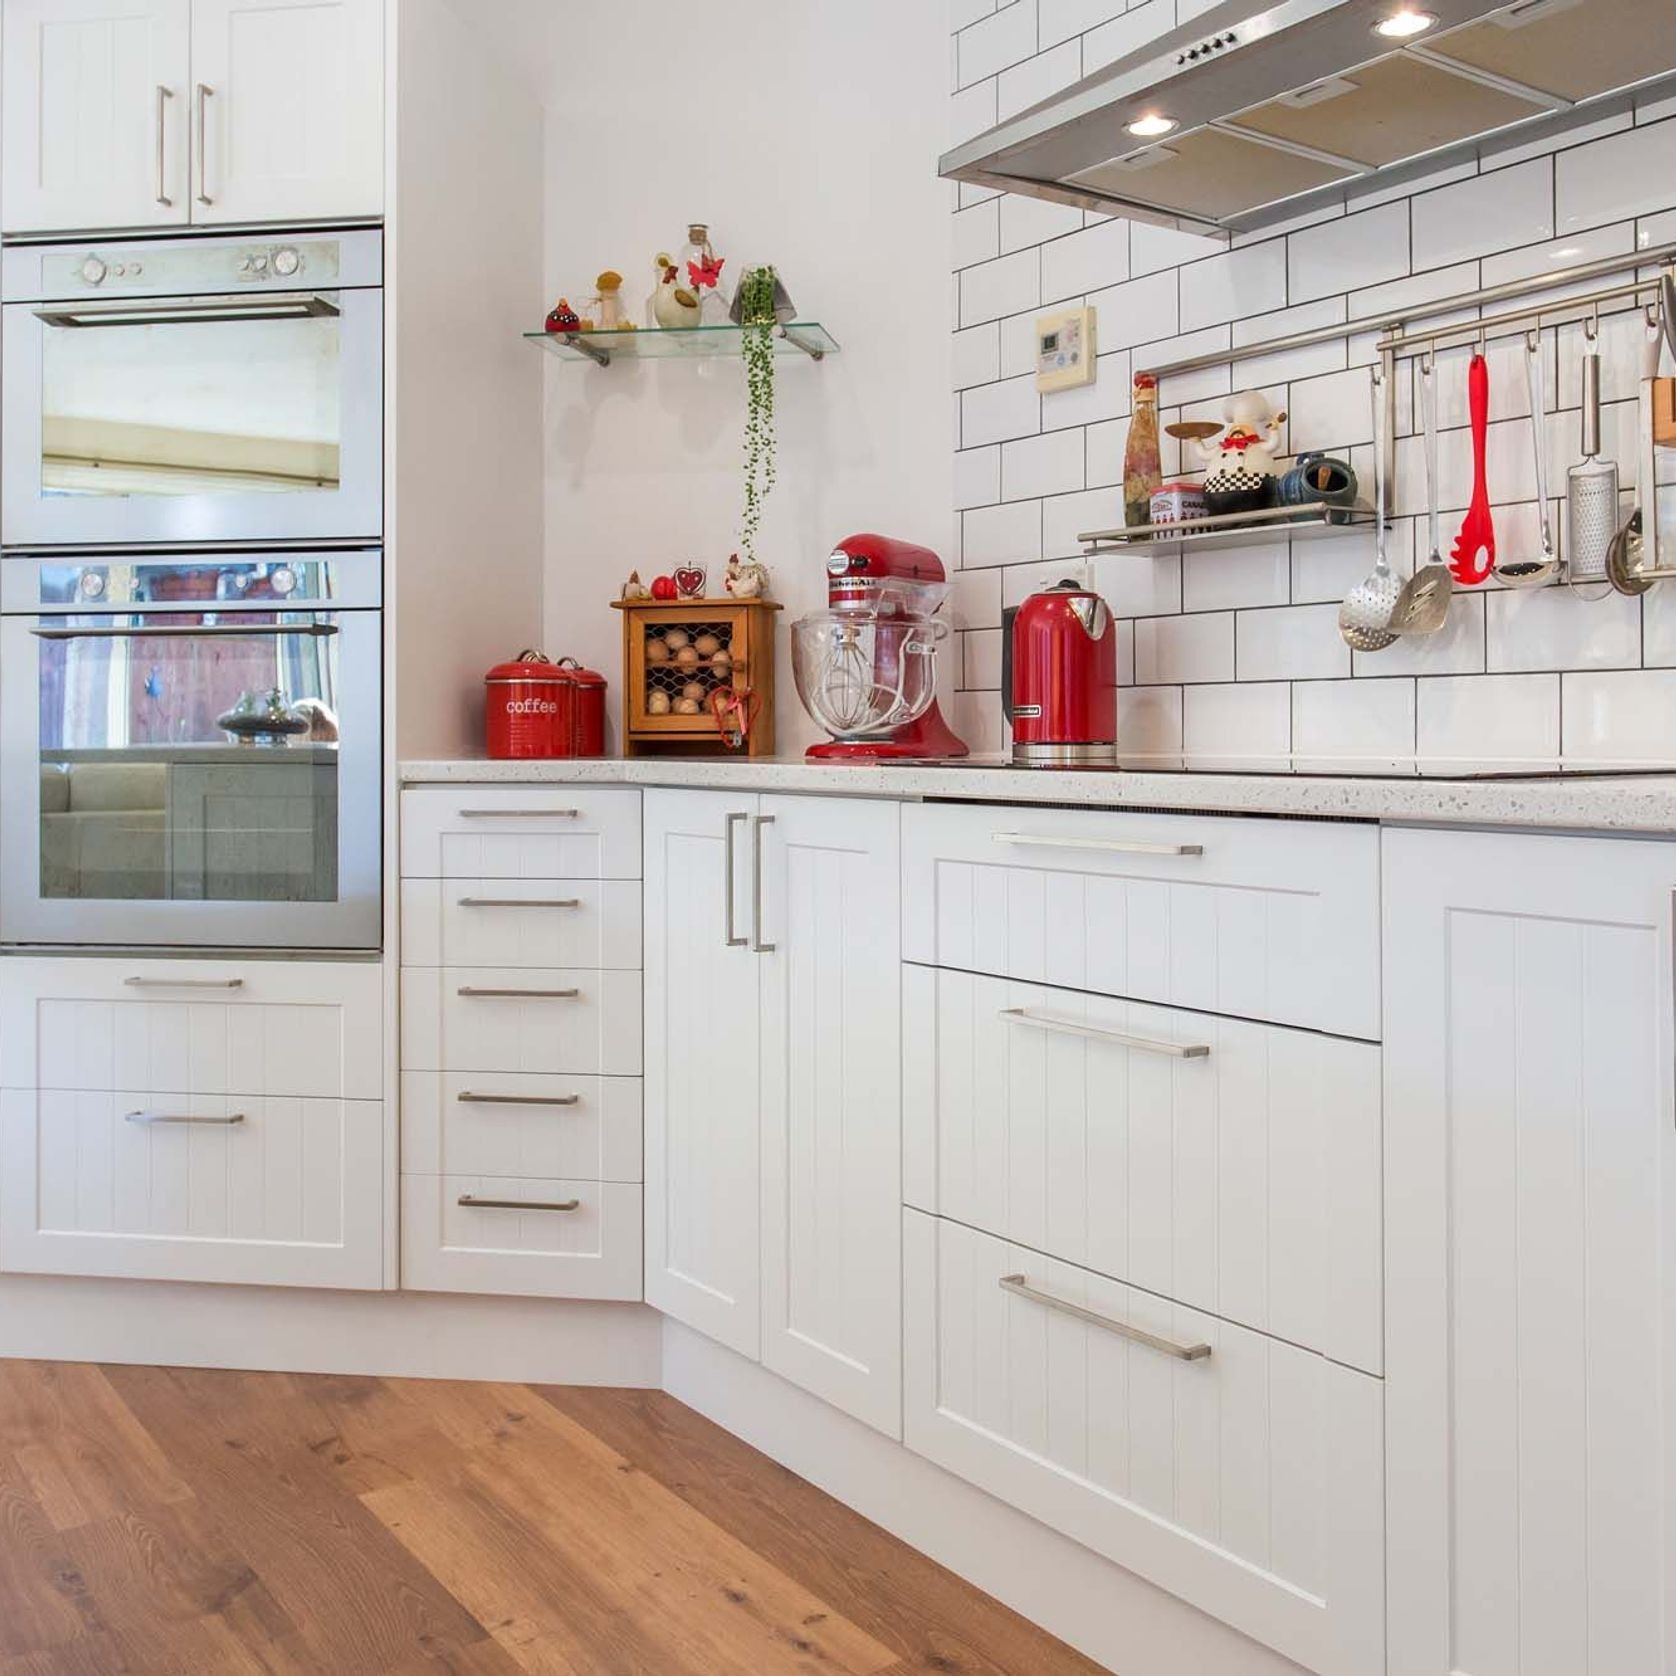 Durostyle Platinum Series - Kitchen Cabinet Doors gallery detail image